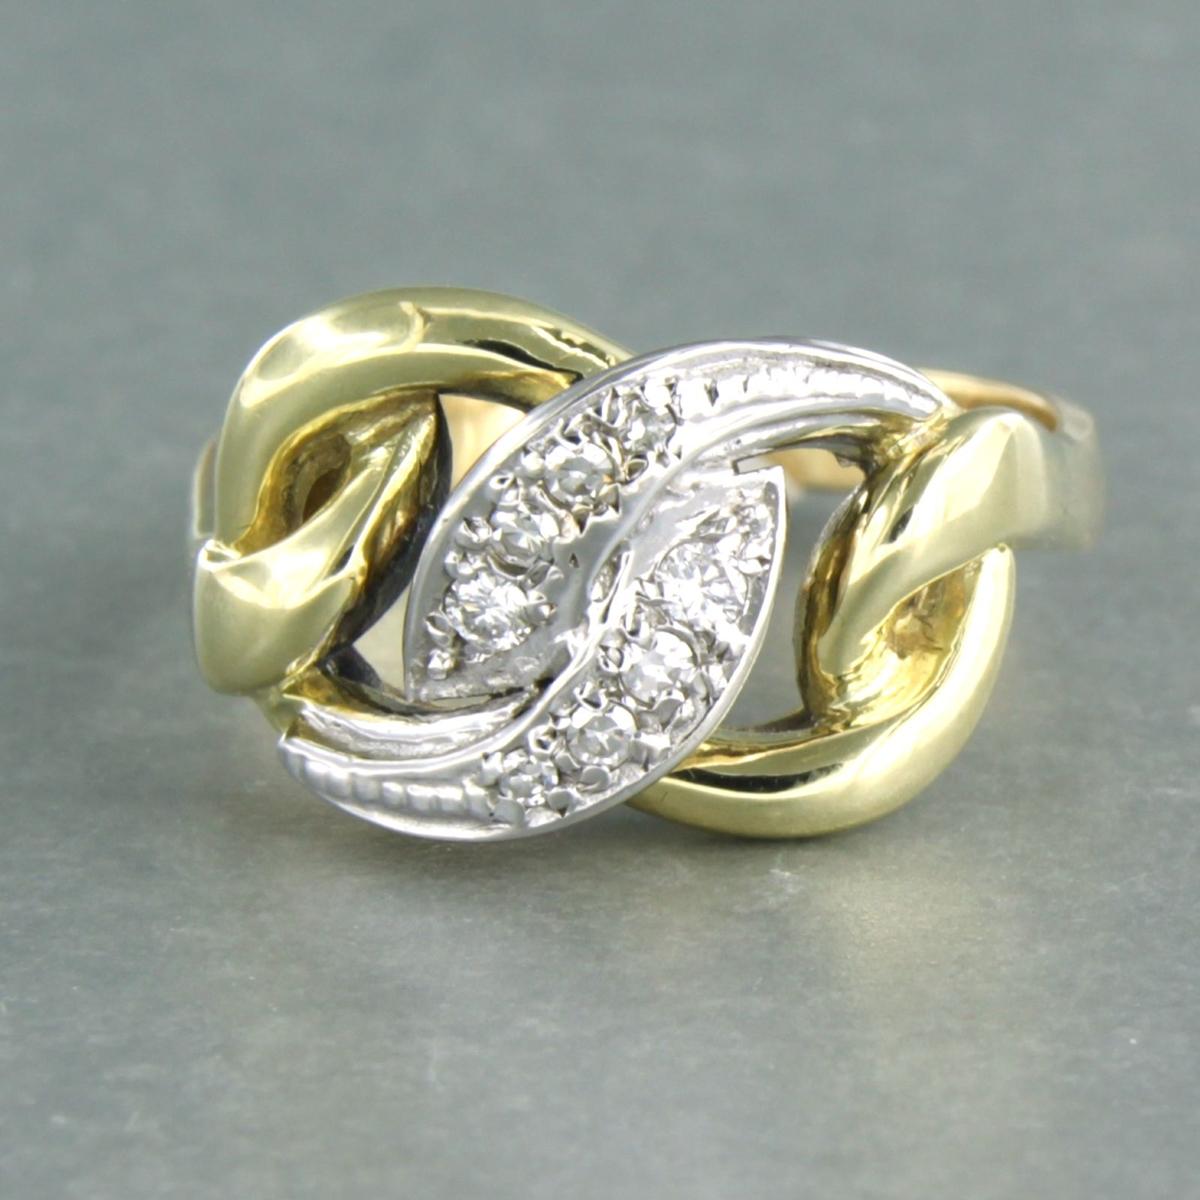 Bague en or bicolore 14k sertie de diamants taille unique jusqu'à . 0.13ct - F/G - VS/SI - taille de la bague U.S. 9.5 - EU. 19.5 (61)

description détaillée

le haut de l'anneau a une largeur de 1.3 cm

Taille de la bague : US 9.5 - EU. 19.5 (61),